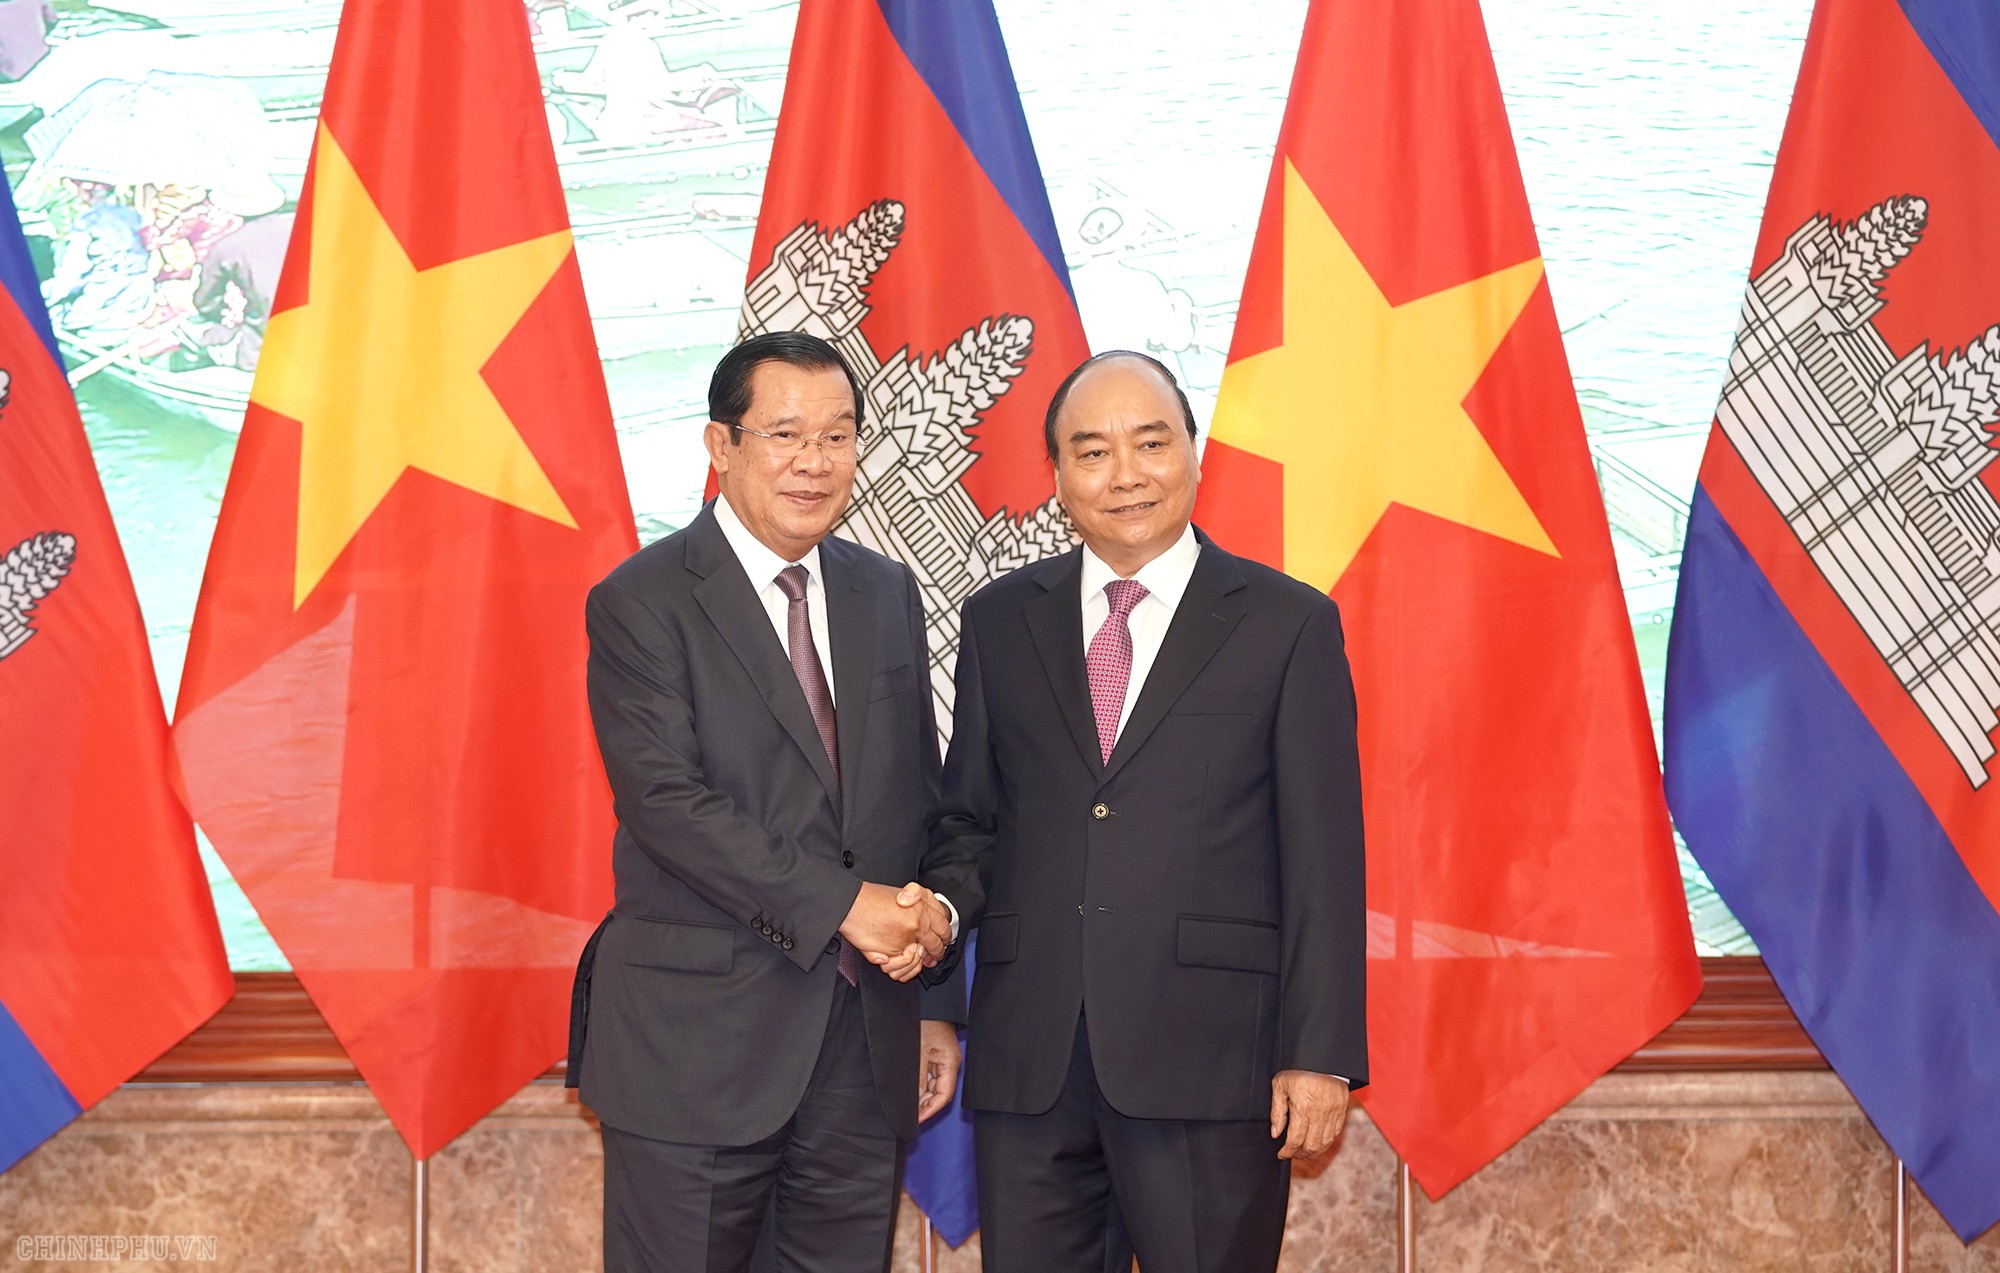 Thủ tướng Nguyễn Xuân phúc đón, hội đàm với Thủ tướng Campuchia - Ảnh 4.